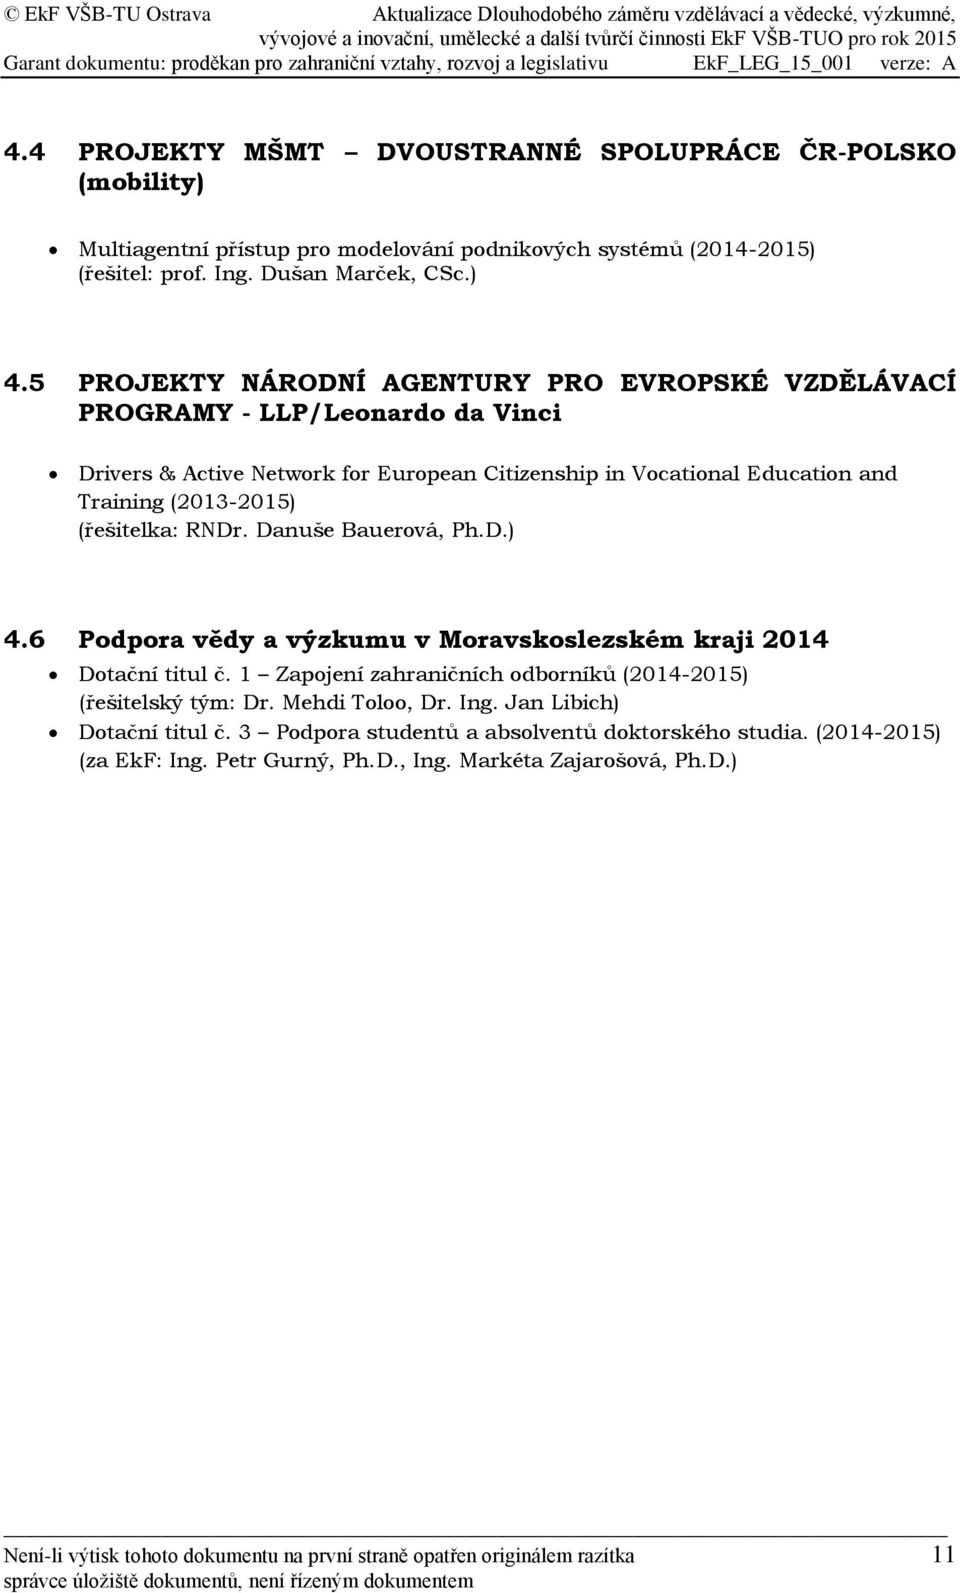 RNDr. Danuše Bauerová, Ph.D.) 4.6 Podpora vědy a výzkumu v Moravskoslezském kraji 2014 Dotační titul č. 1 Zapojení zahraničních odborníků (2014-2015) (řešitelský tým: Dr. Mehdi Toloo, Dr. Ing.